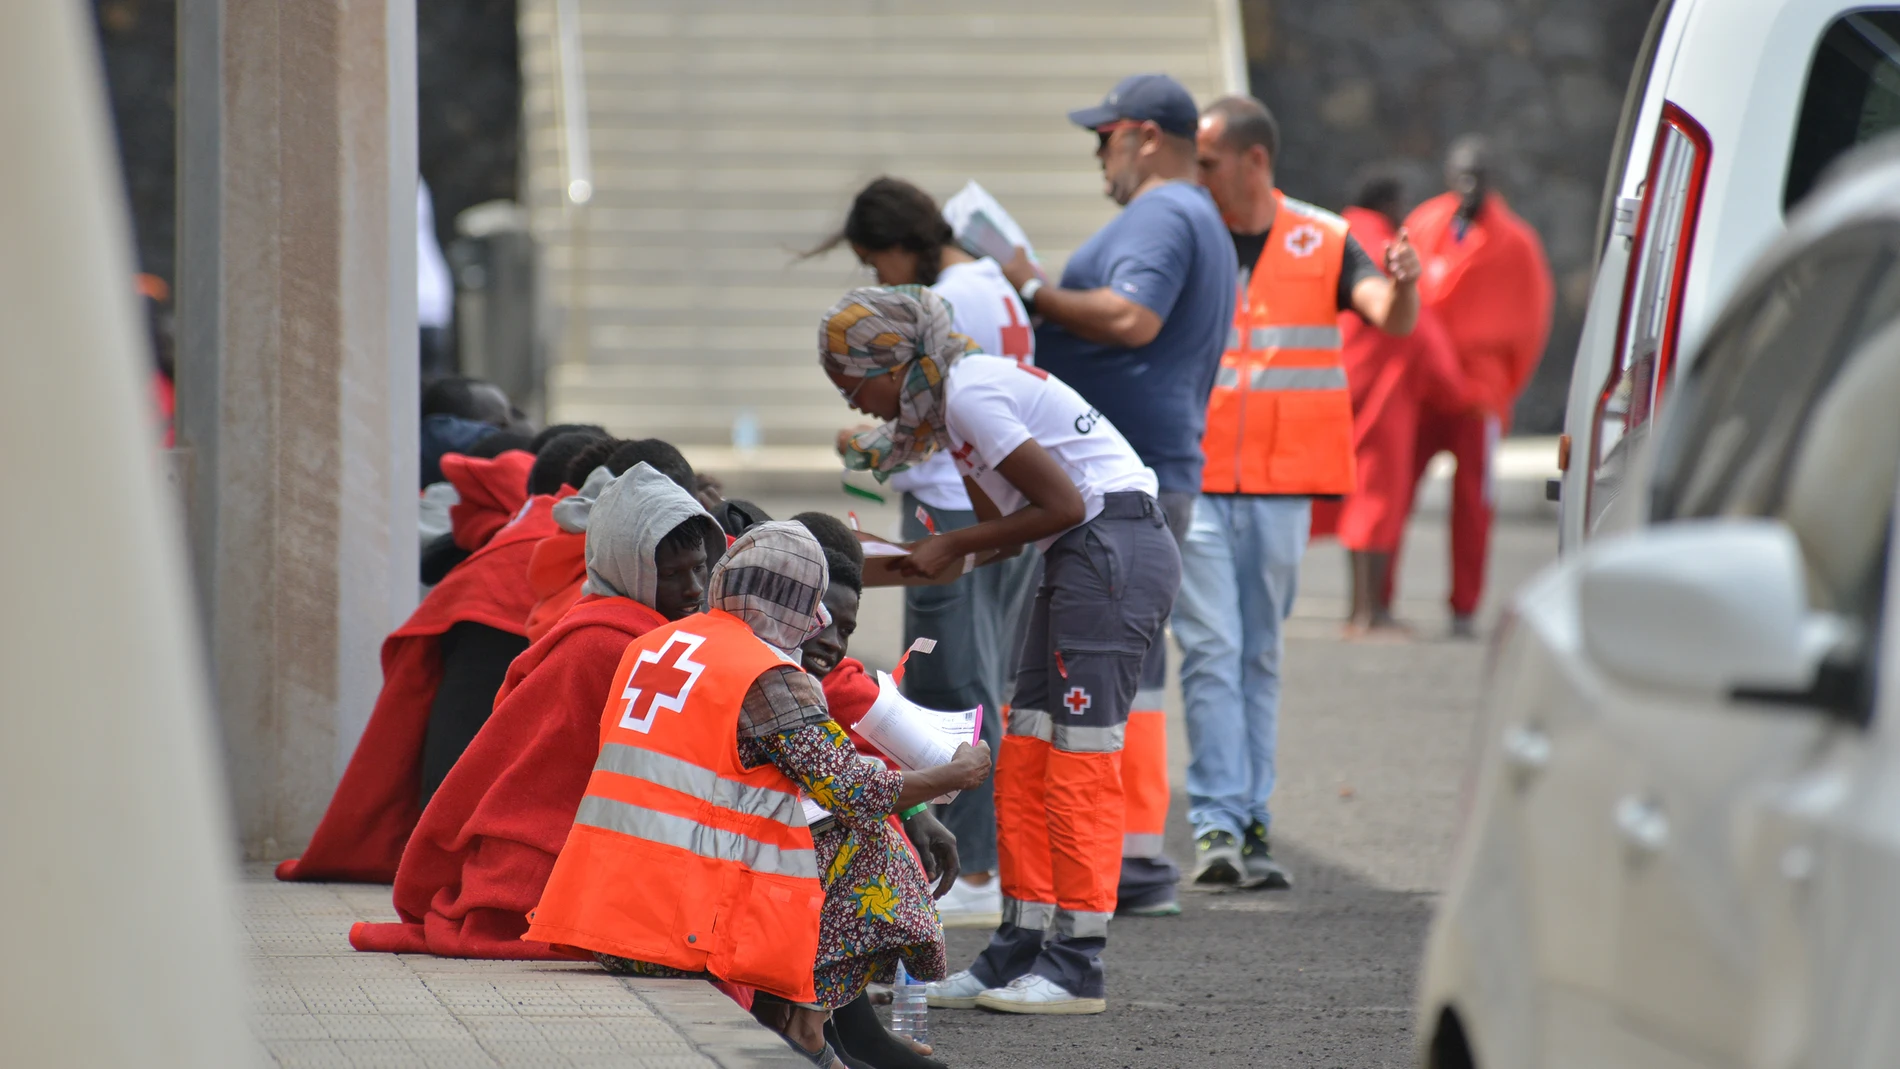 Llegan más de 900 personas a Canarias a bordo de 14 pateras desde la tarde de este jueves